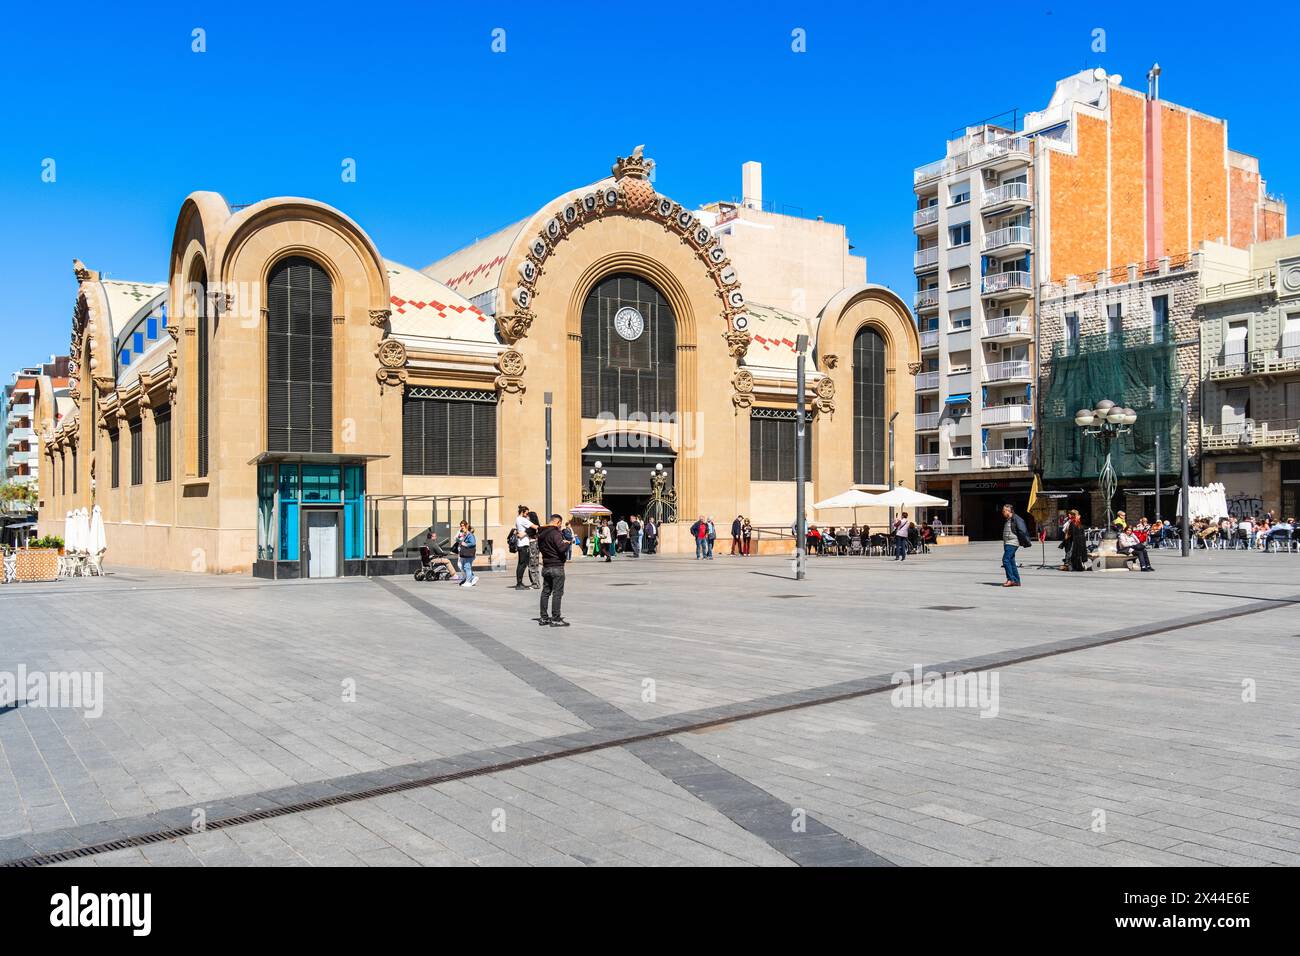 Mercat Central de Tarragona, marché central au soleil à Tarragone, Espagne Banque D'Images